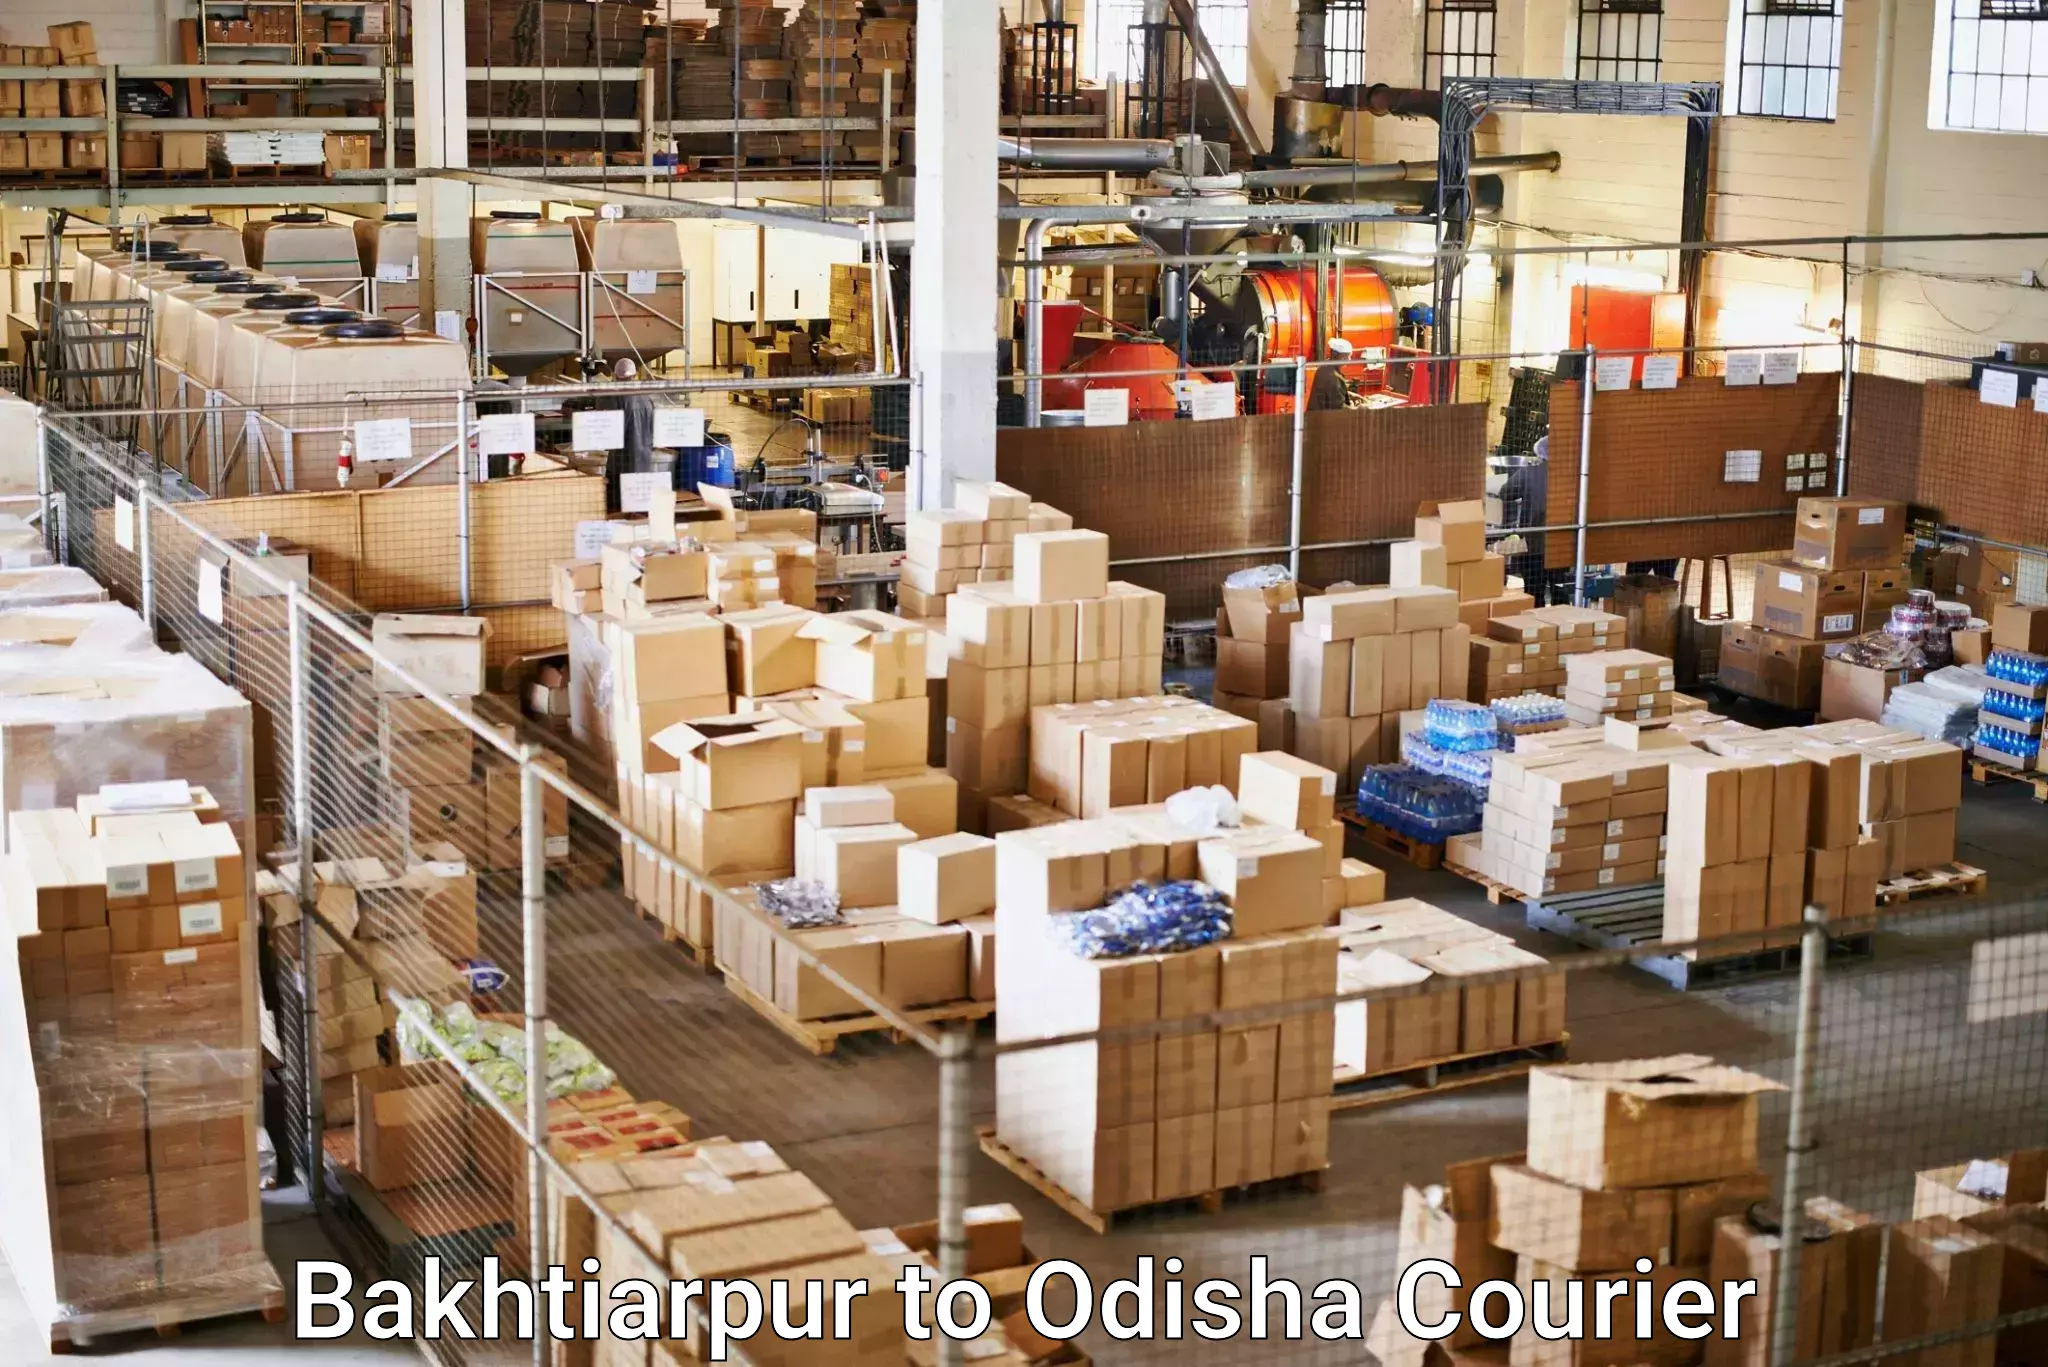 User-friendly delivery service Bakhtiarpur to Daspalla